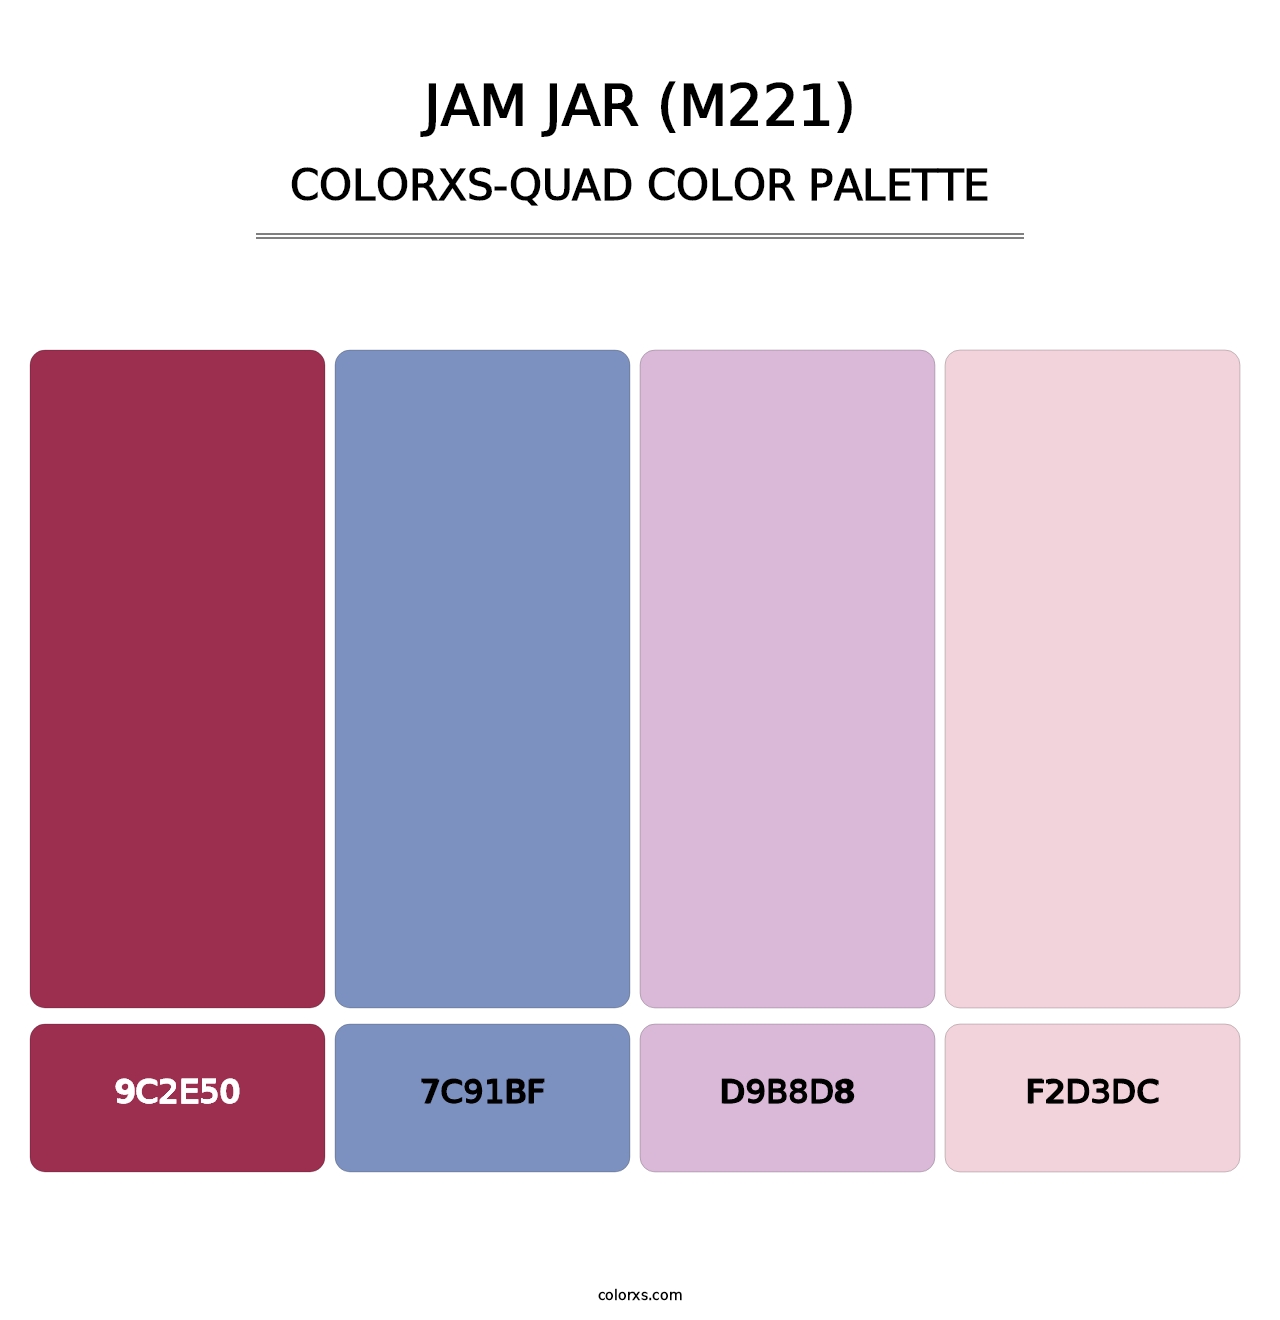 Jam Jar (M221) - Colorxs Quad Palette